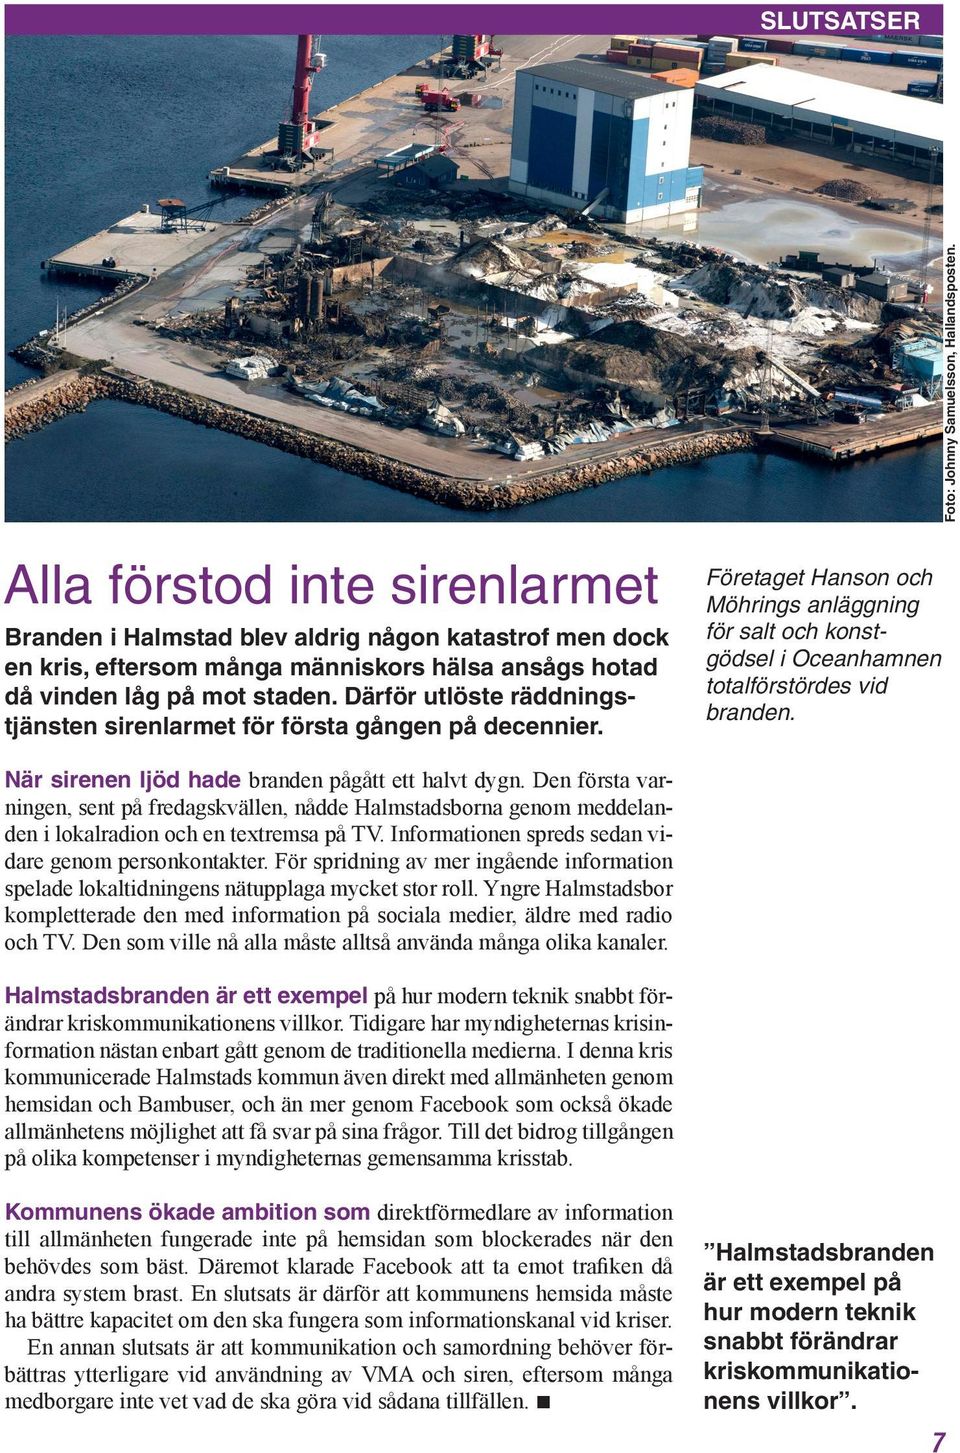 Därför utlöste räddningstjänsten sirenlarmet för första gången på decennier. Företaget Hanson och Möhrings anläggning för salt och konstgödsel i Oceanhamnen totalförstördes vid branden.